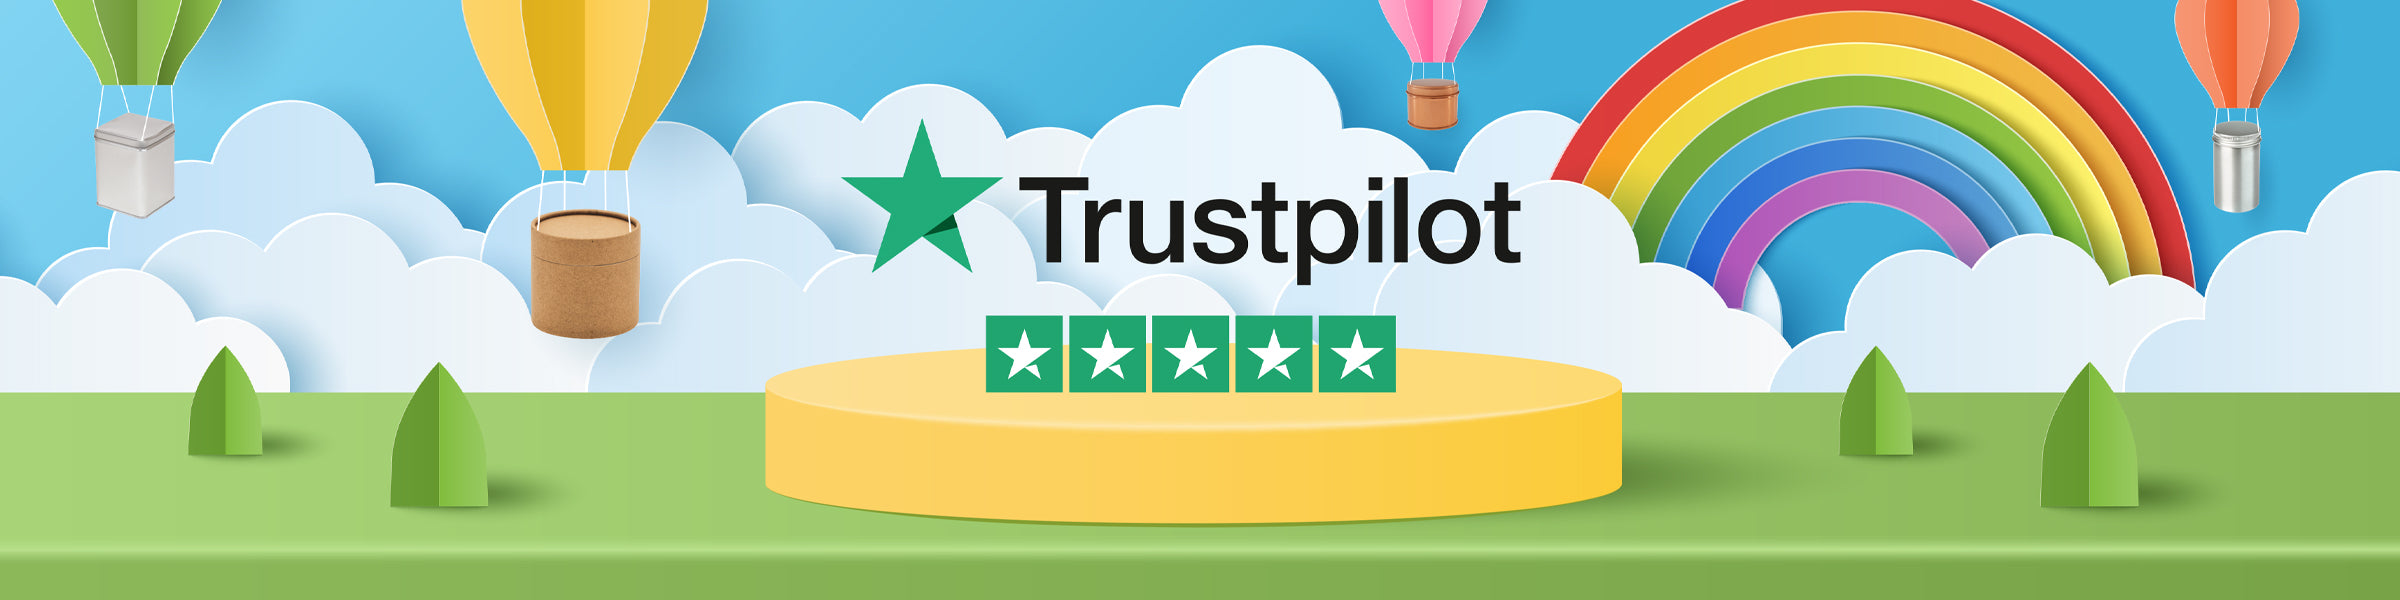 Trustpilot calificación de cinco estrellas rodeado de latas y tubos de cartón que se entregan en globo aerostático.